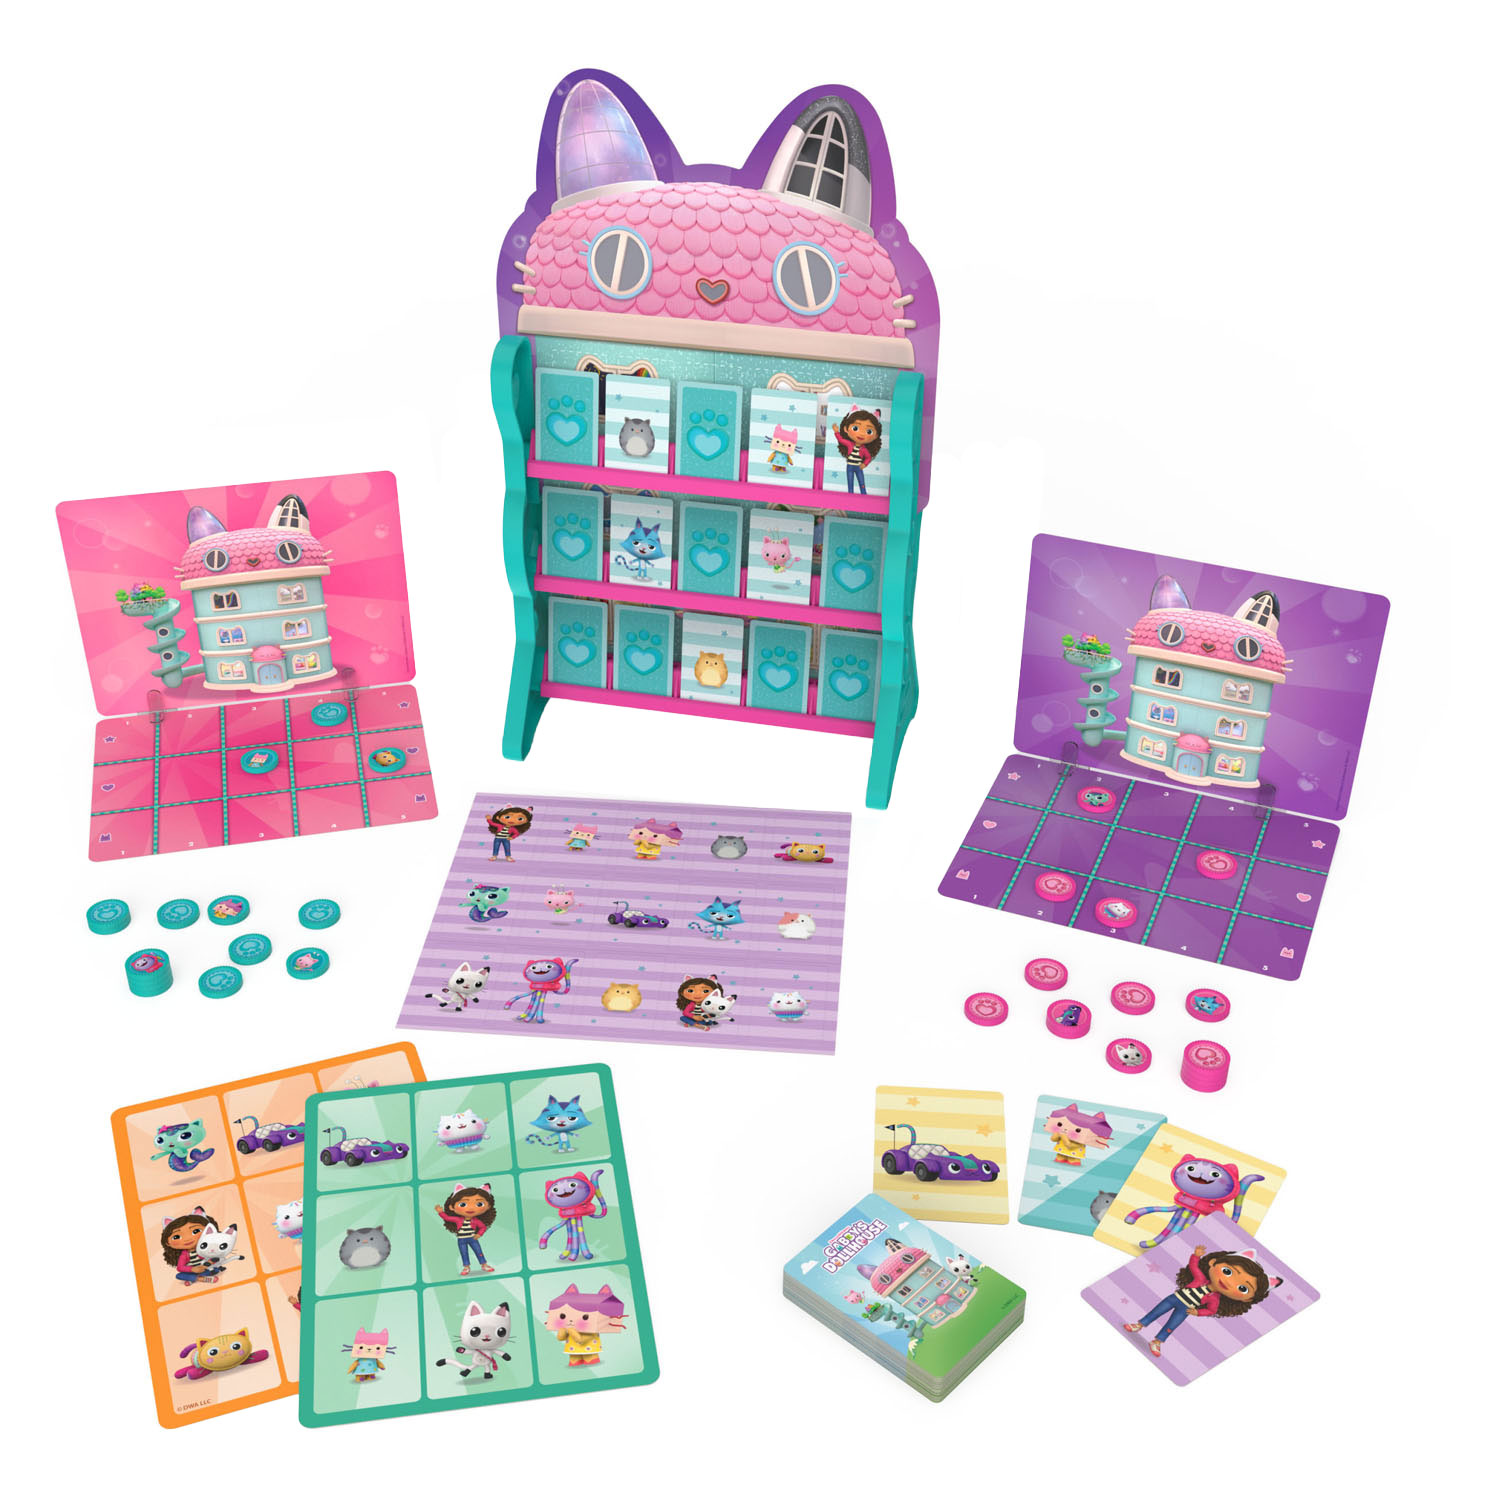 Gabby et la maison magique - Pack de jeux avec 8 jeux